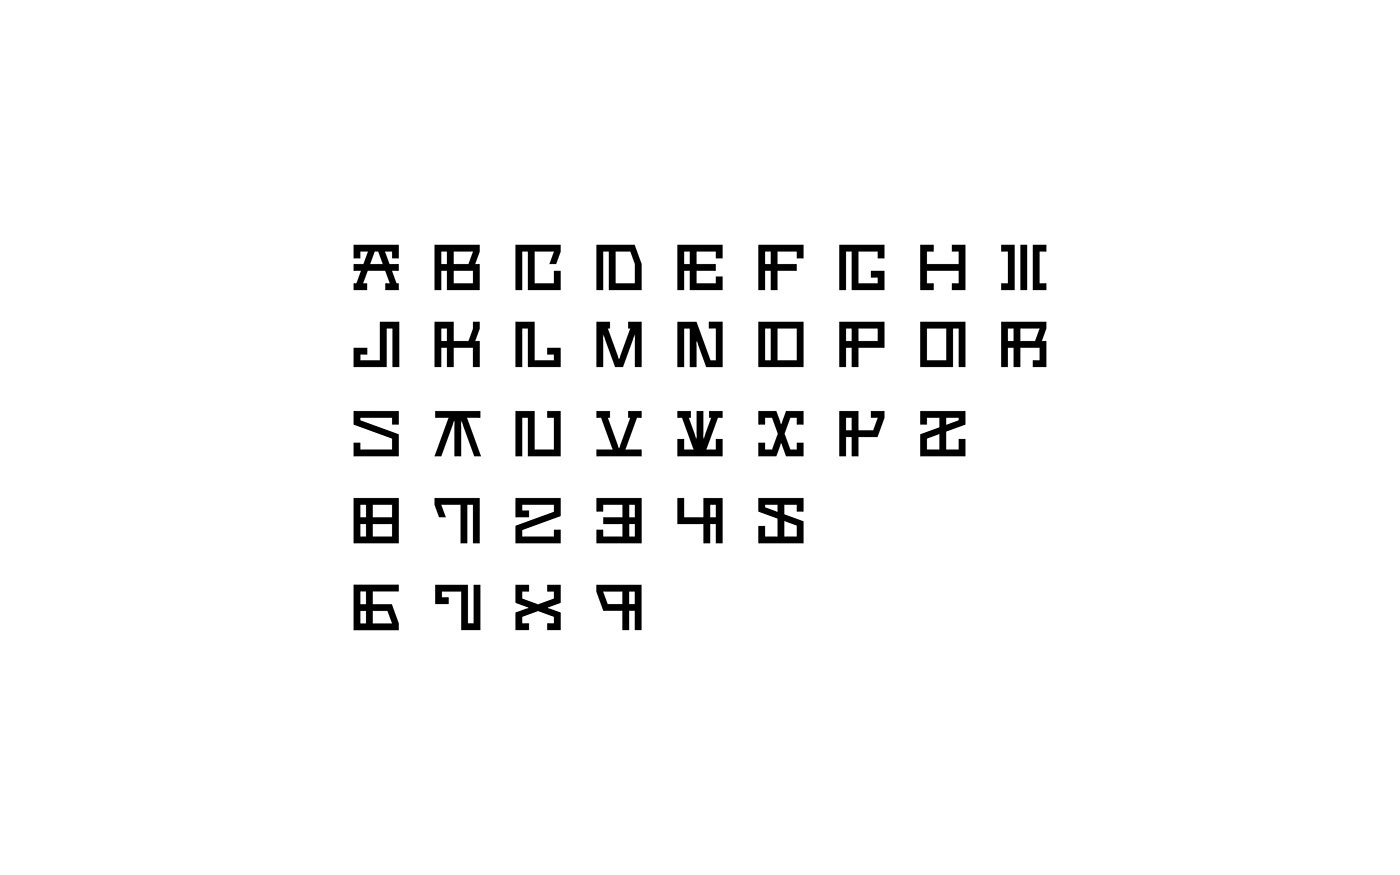 Script lettering alphabet type square graphic design Project letter font